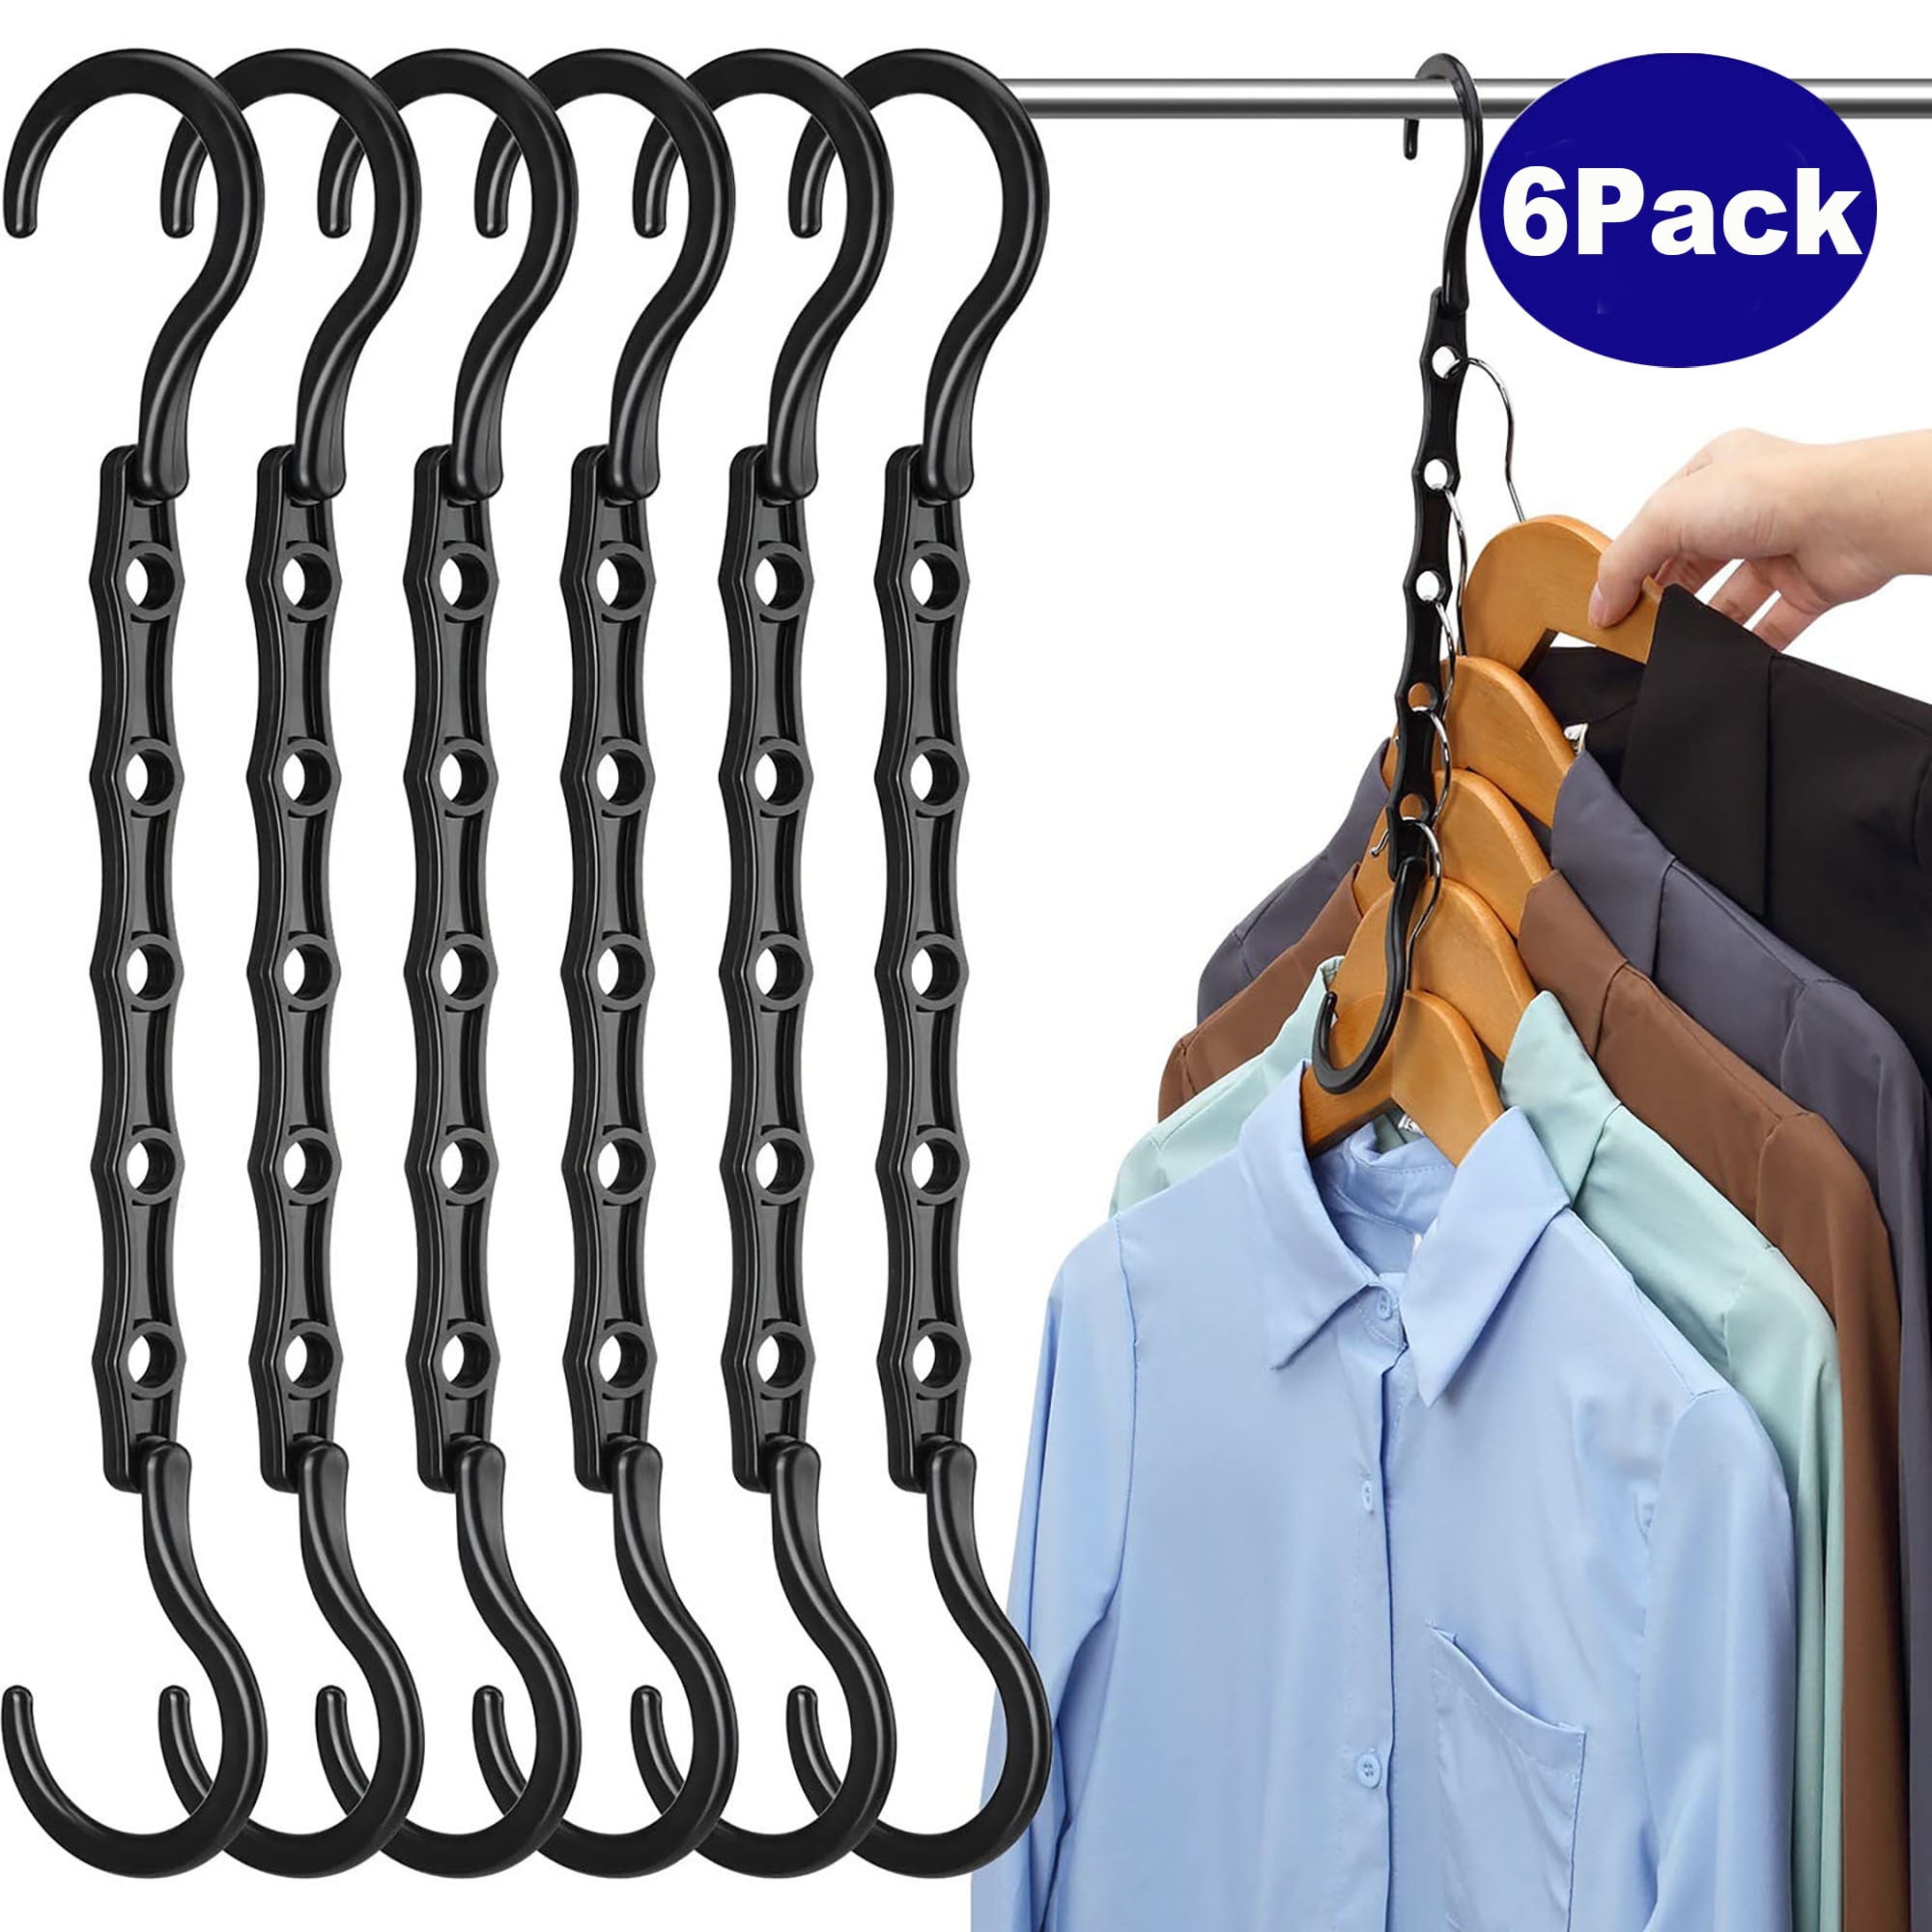 Room Essentials Plastic Hangers (18 pack - Grey)